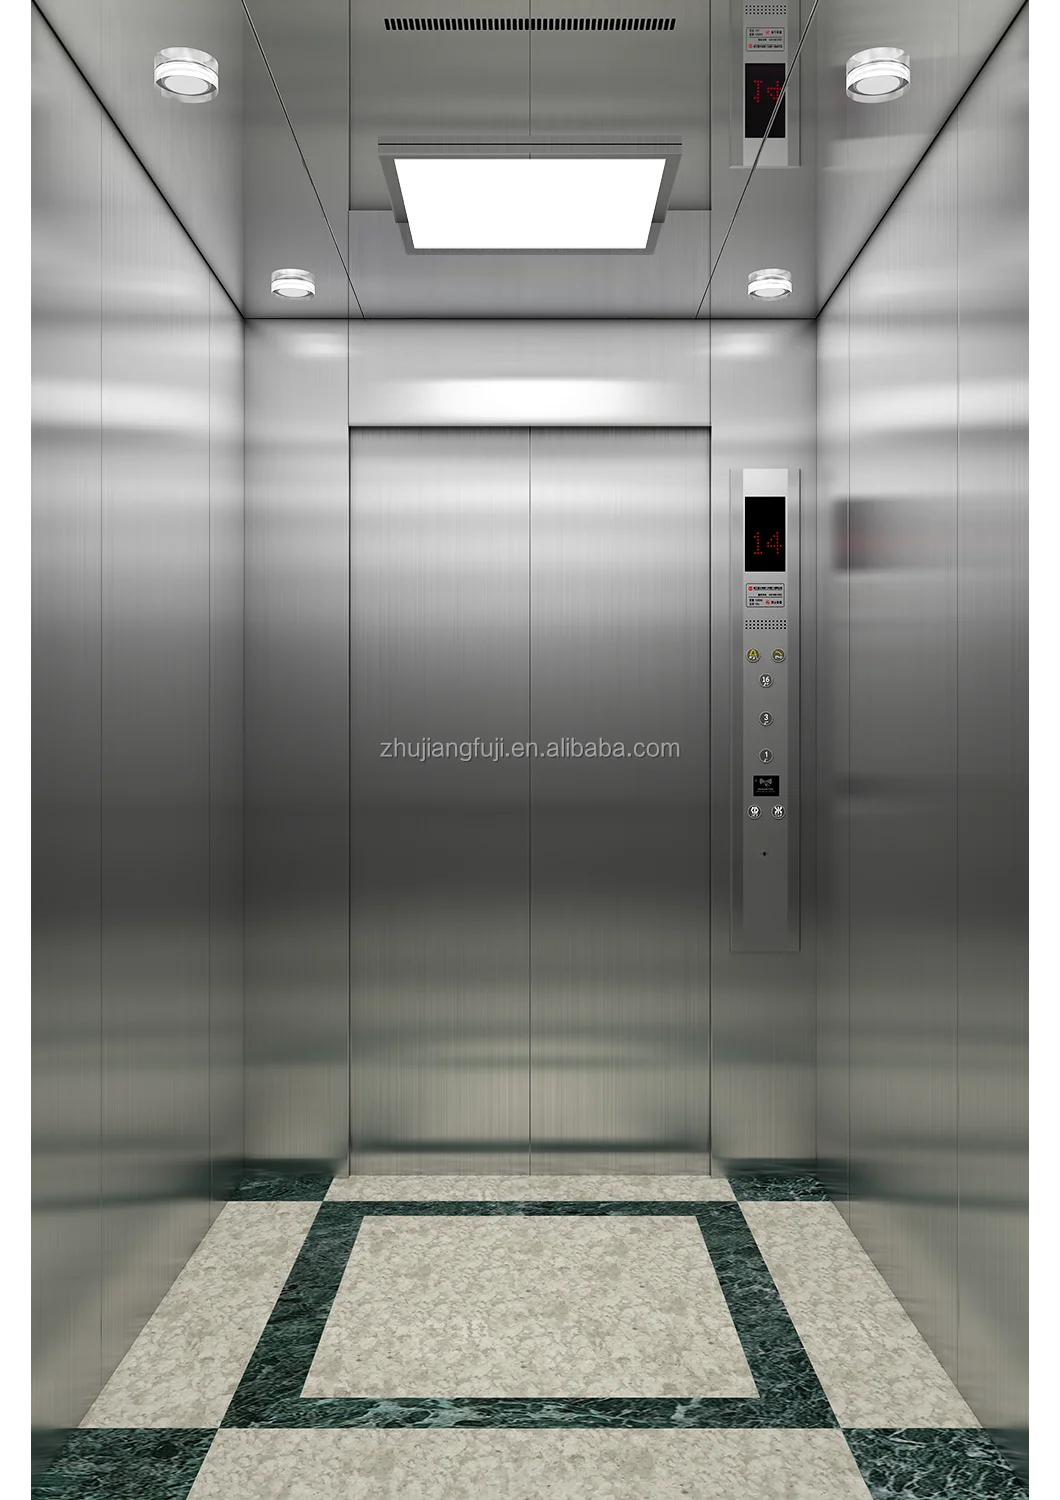 Fuji japan elevator manufacturer business elevator 10 person passenger elevator